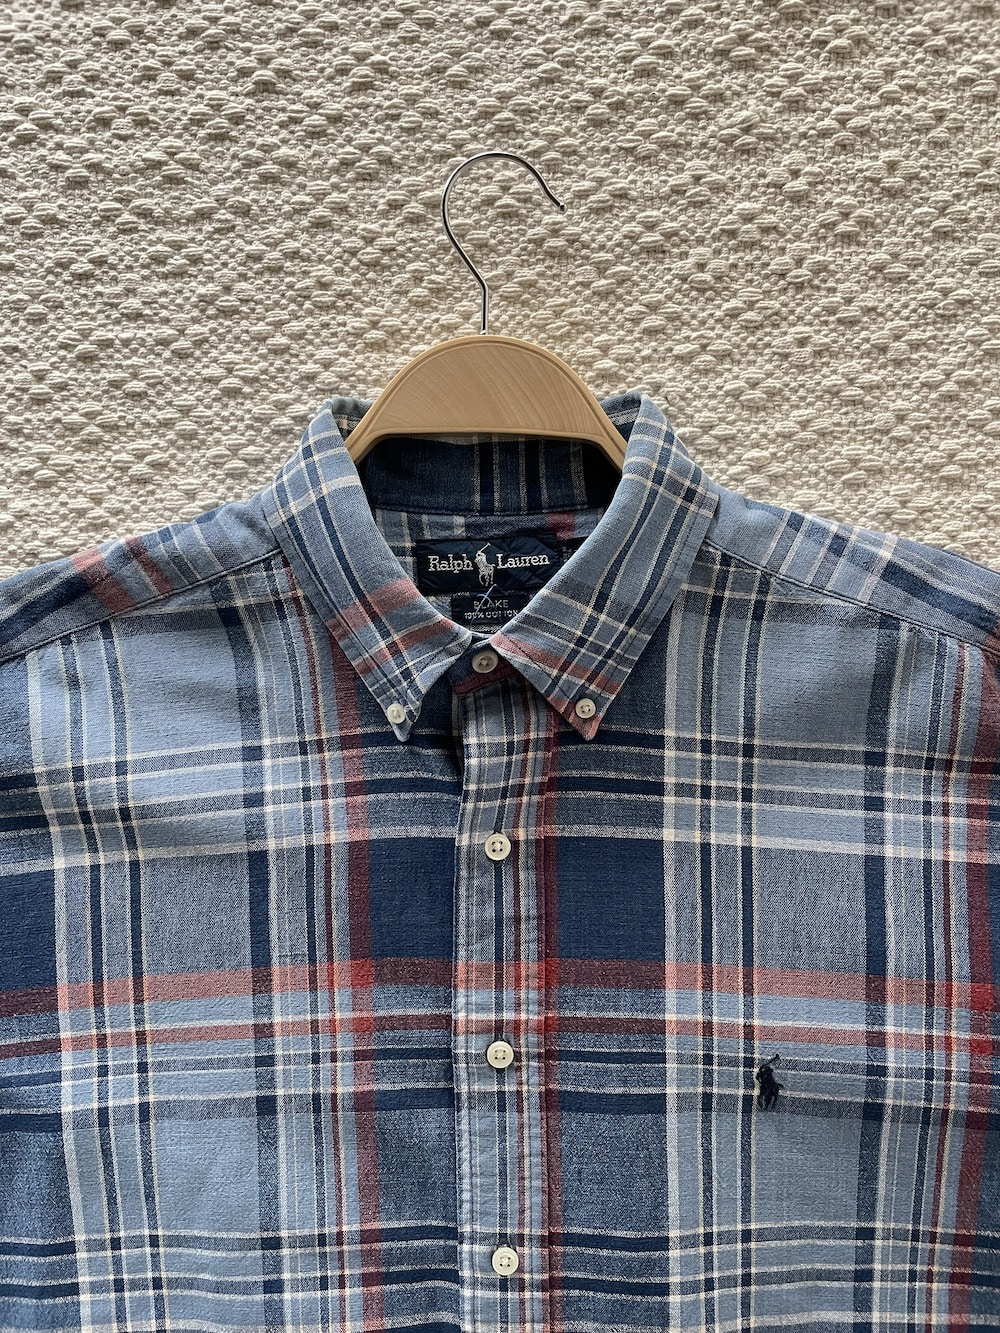 [ L ] Polo Ralph Lauren Shirt (5908)